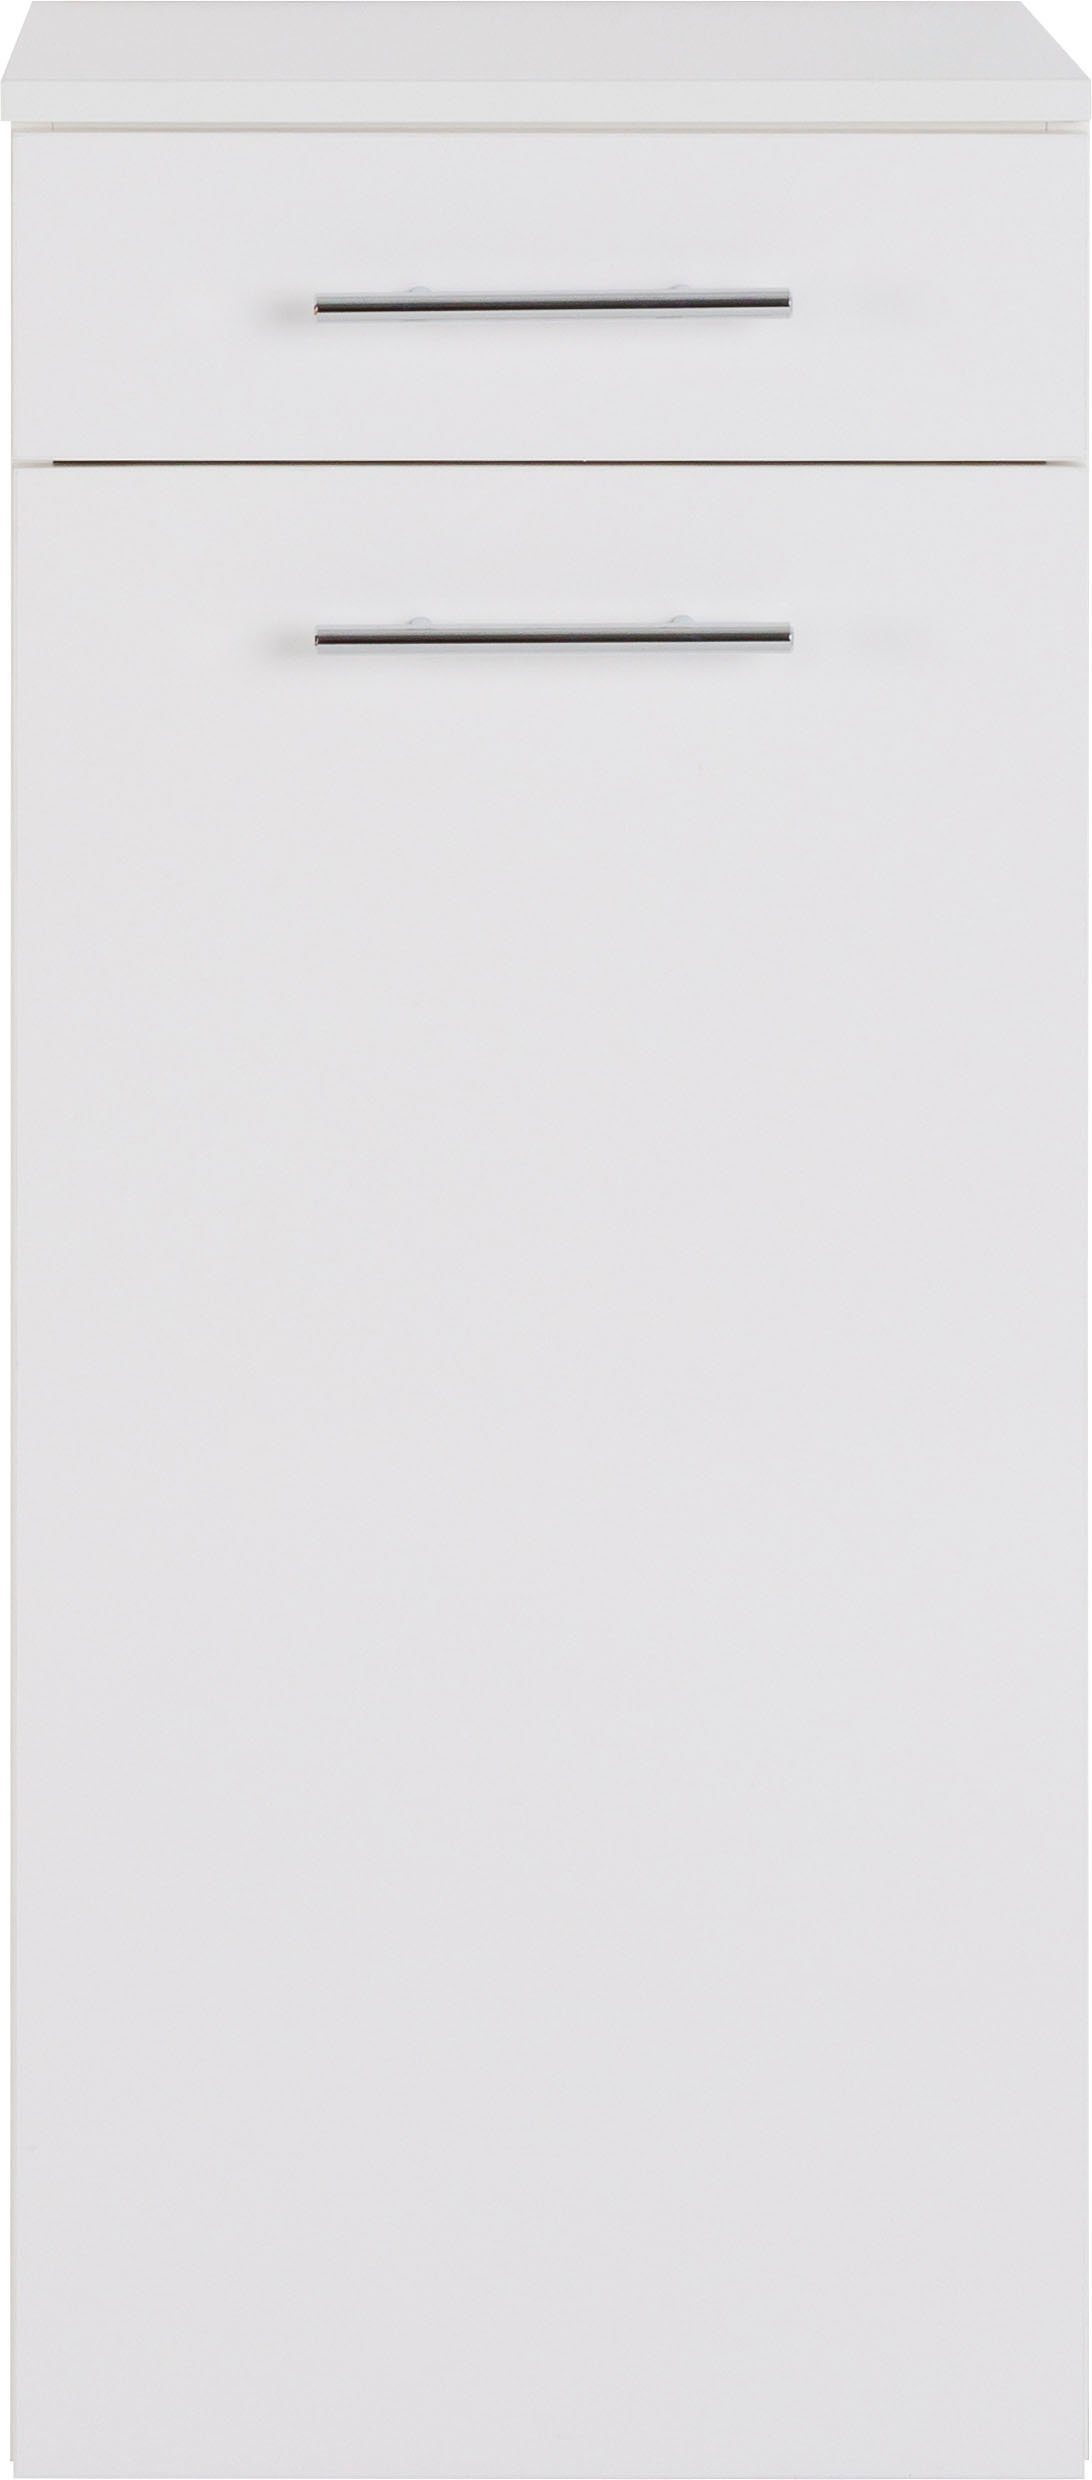 MARLIN Midischrank 3040, Breite weiß 40 cm | weiß